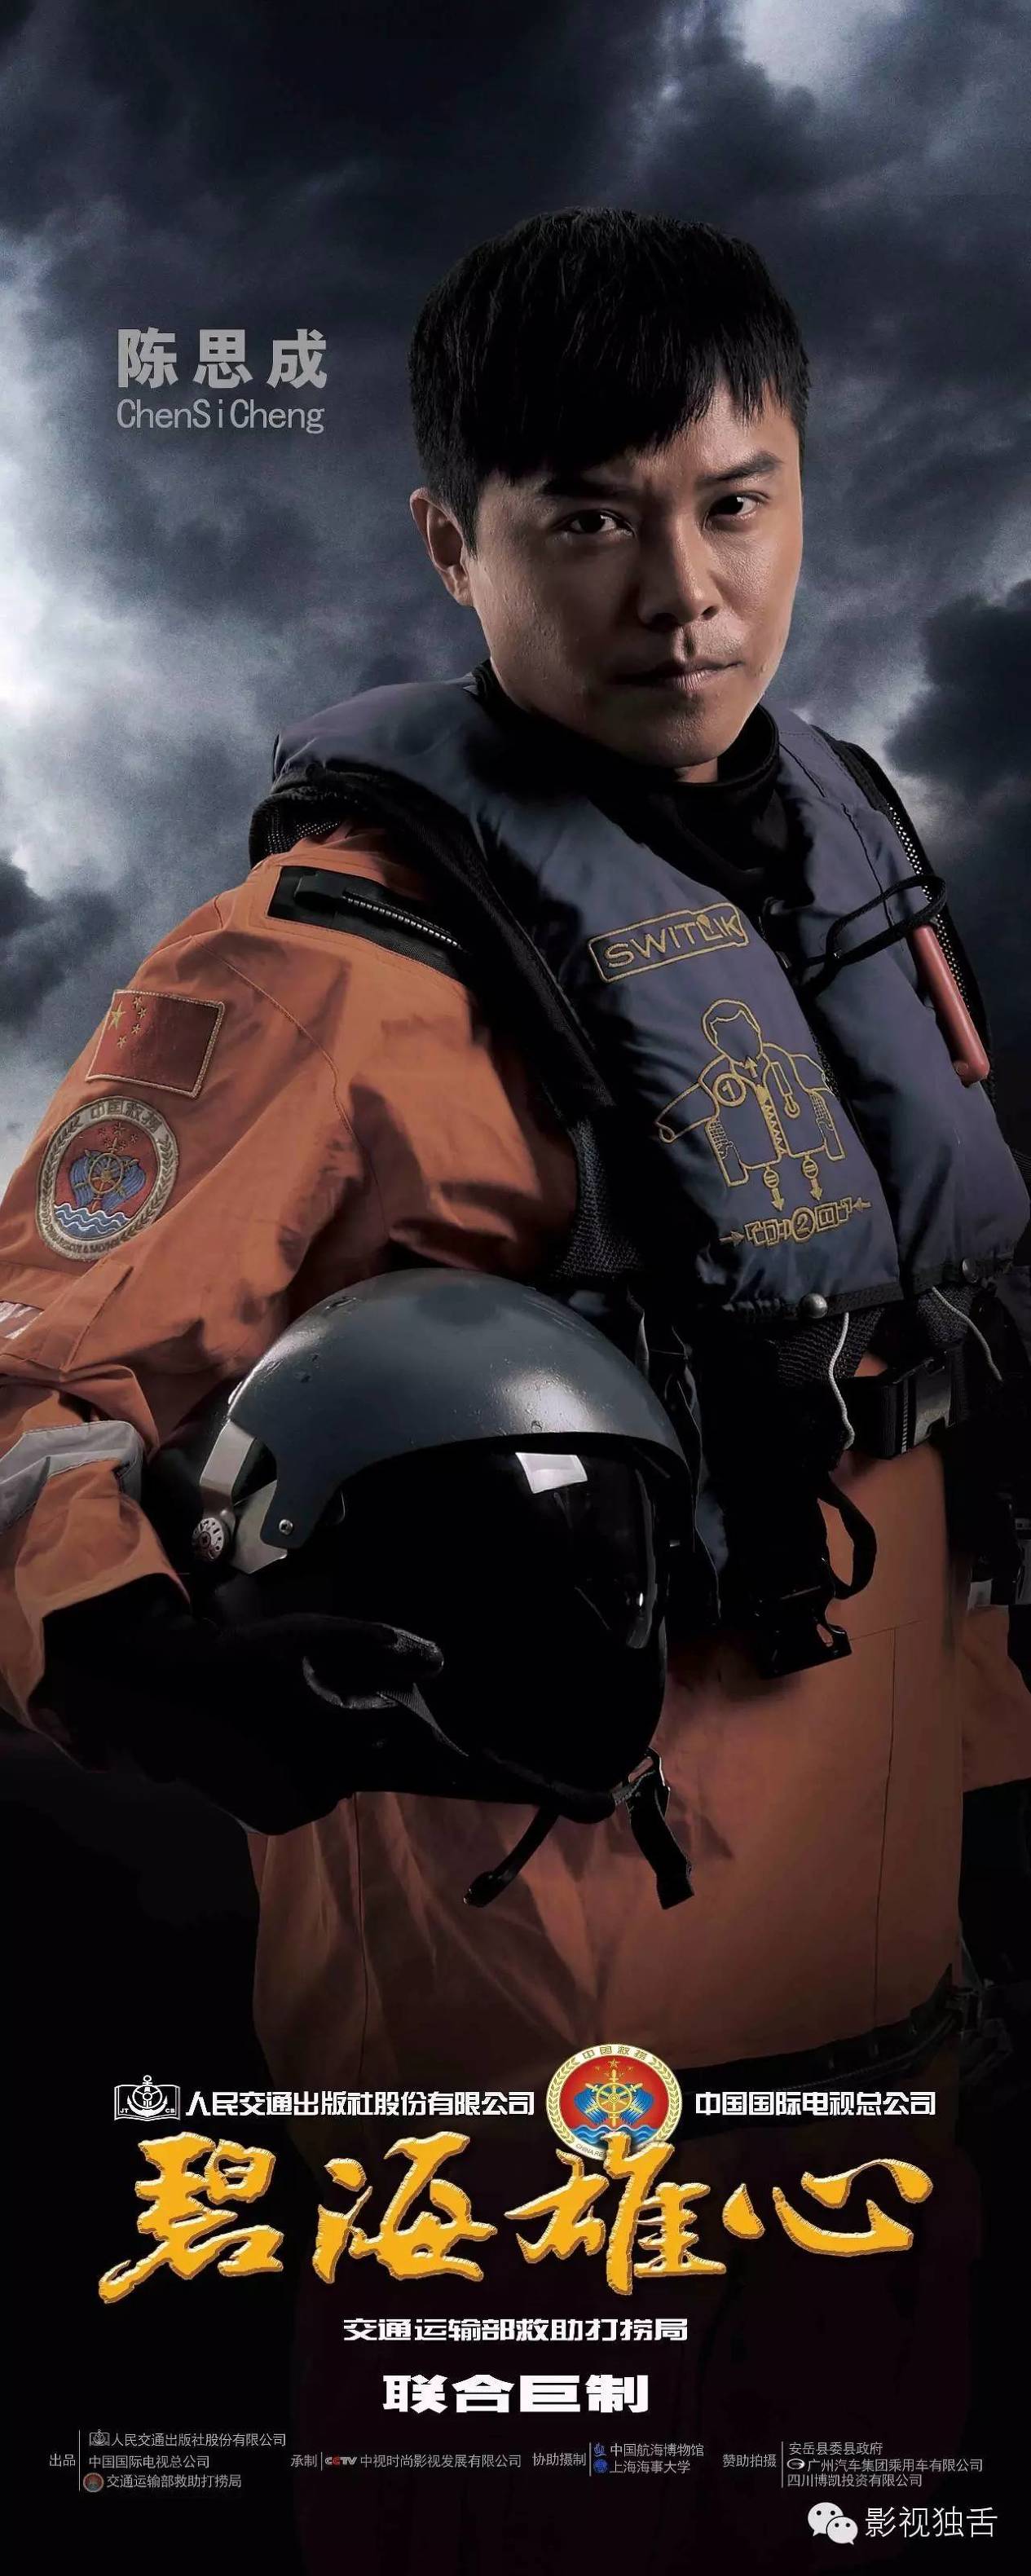 “碧海雄心”：海上救援电影是如何被提炼出来的。